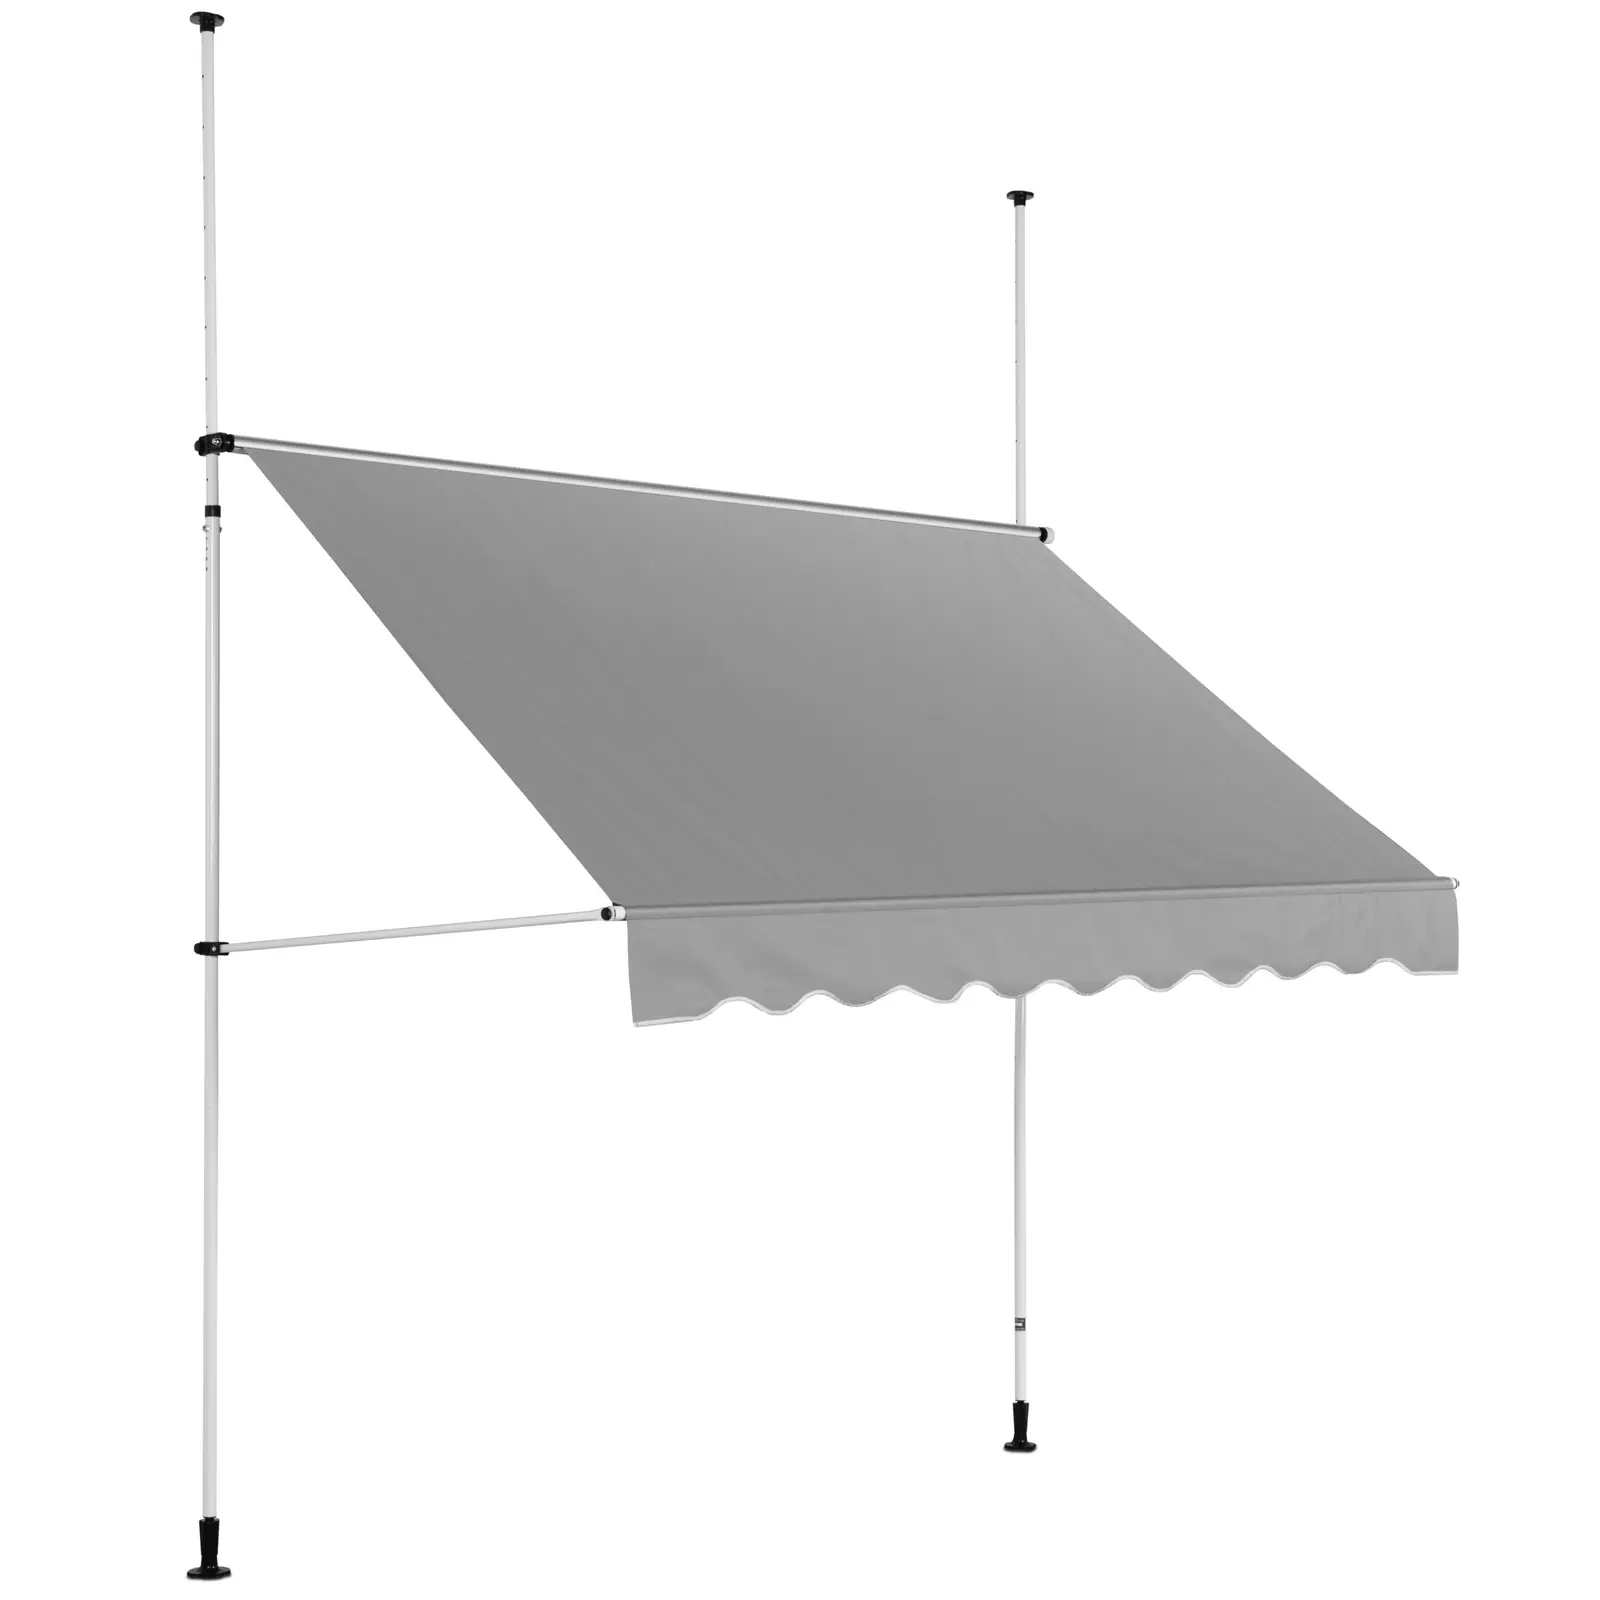 Markiisi - 2 - 3,1 m - 250 x 120 cm - UV-kestävä - antrasiitinharmaa / valkoinen